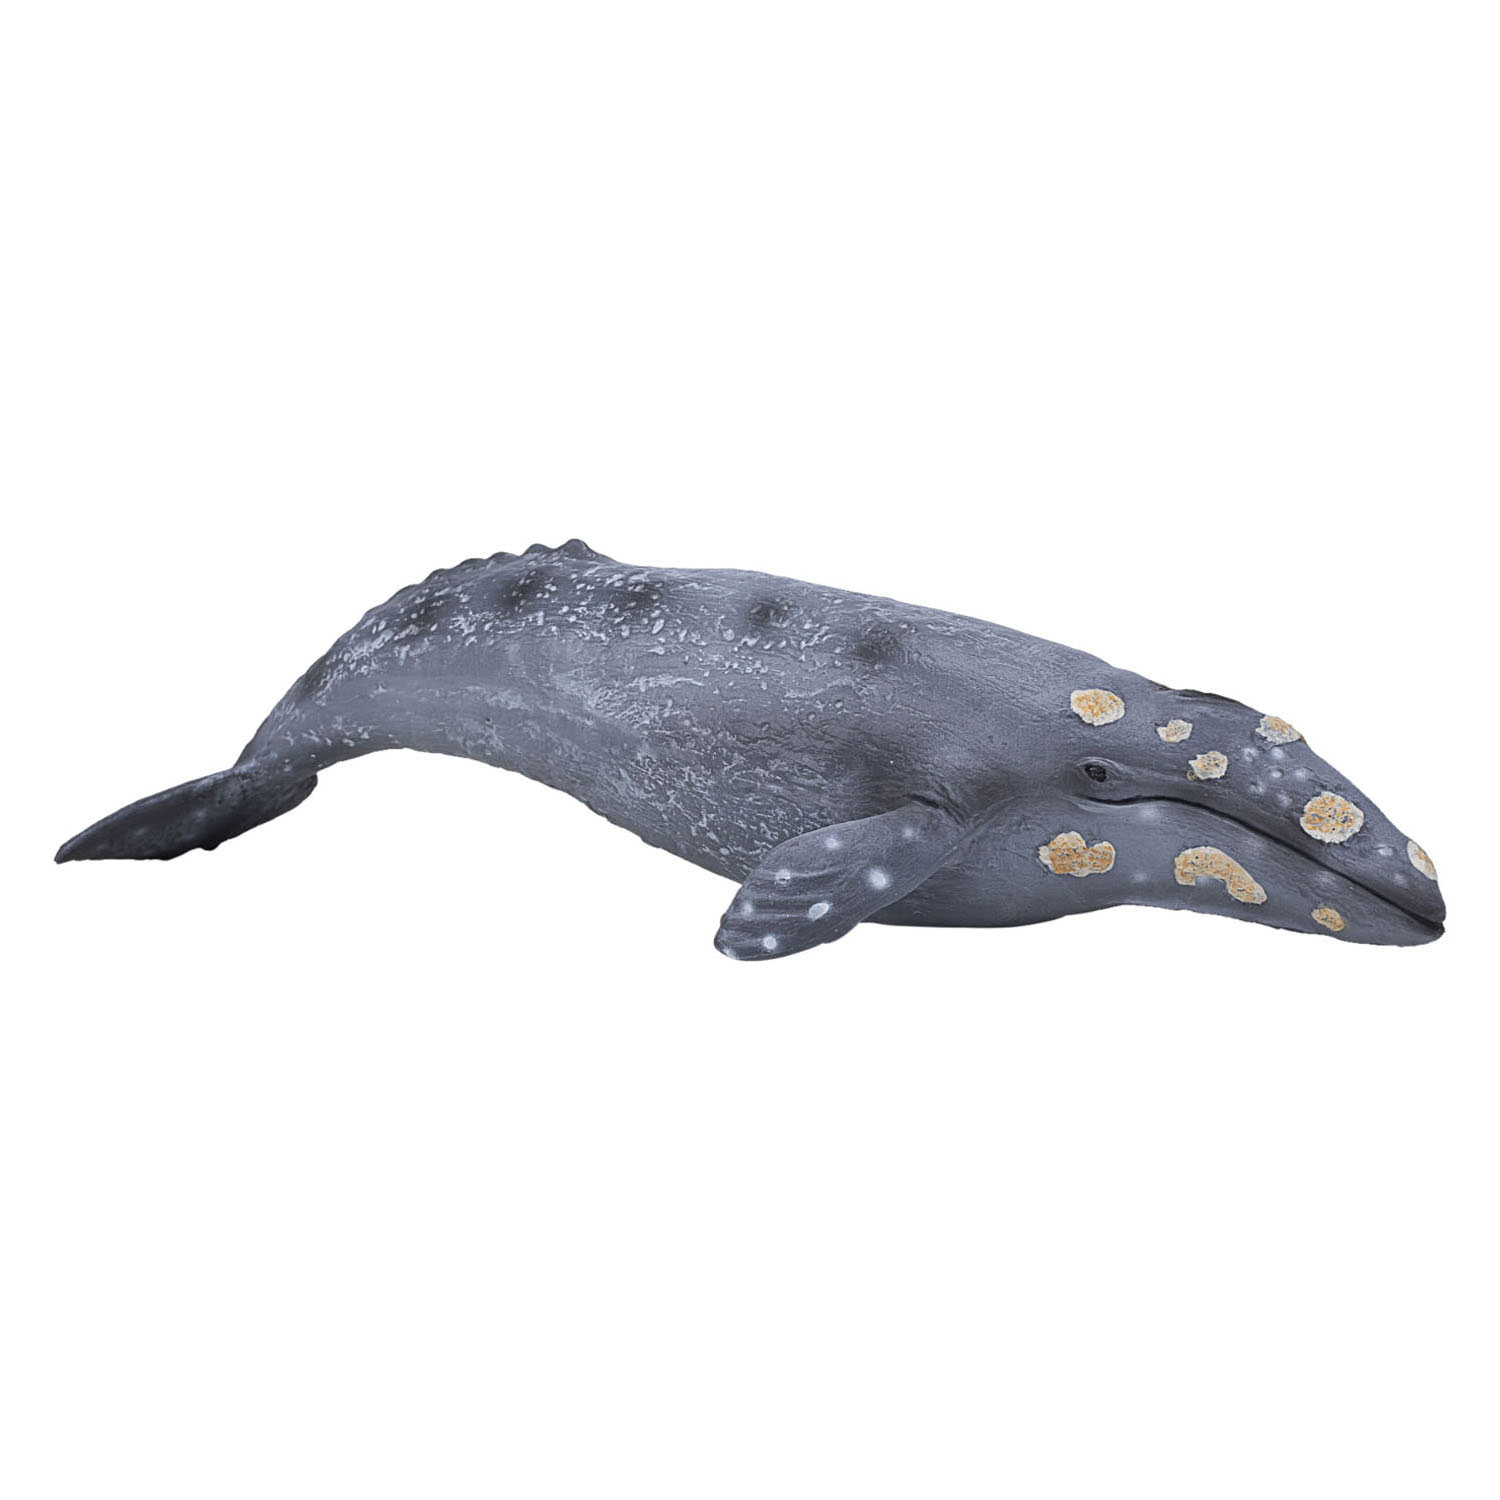 Mojo Sealife - Grauwal 387280